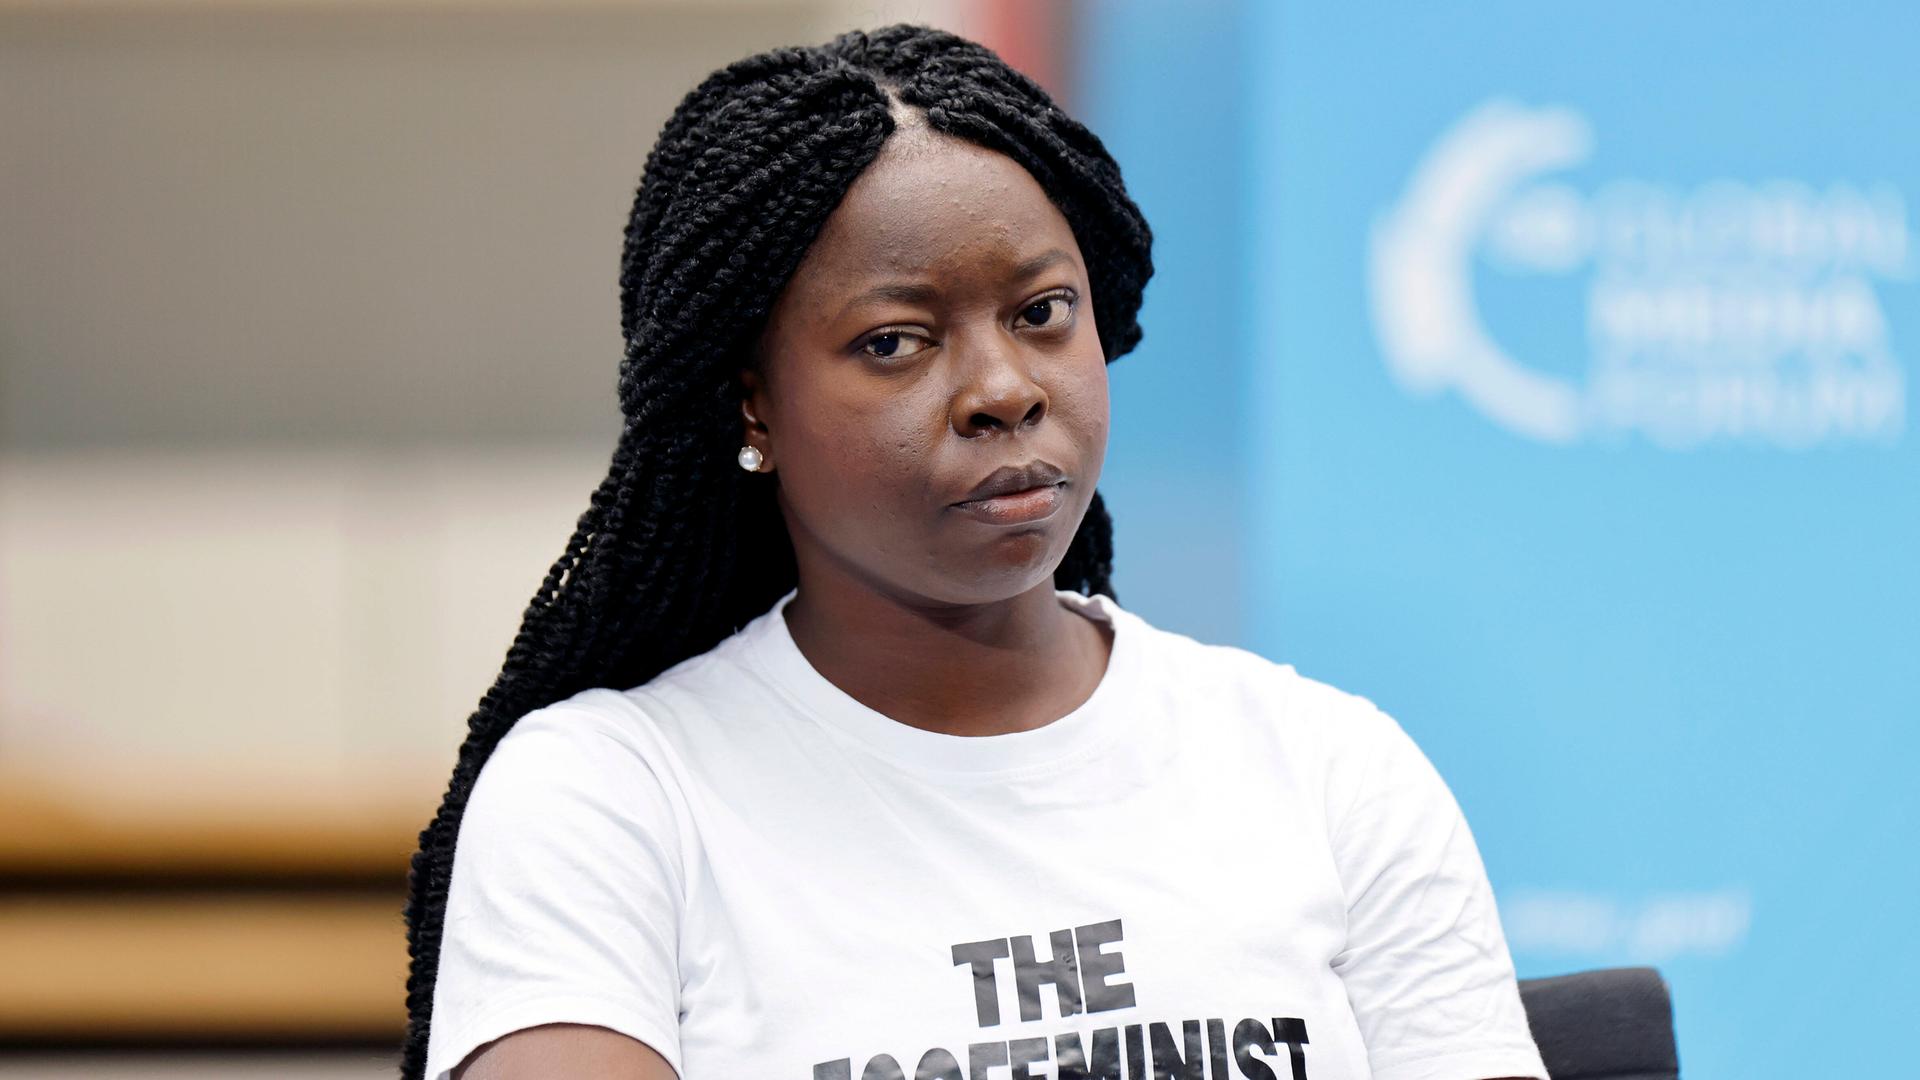 Klima-Aktivistin Adenike Oladosu beim Deutsche Welle Global Media Forum in Bonn. Sie trägt ein weißes T-Shirt mit der Aufschrift "The Ecofeminist" (auf Deutsch: Die Öko-Feministin).